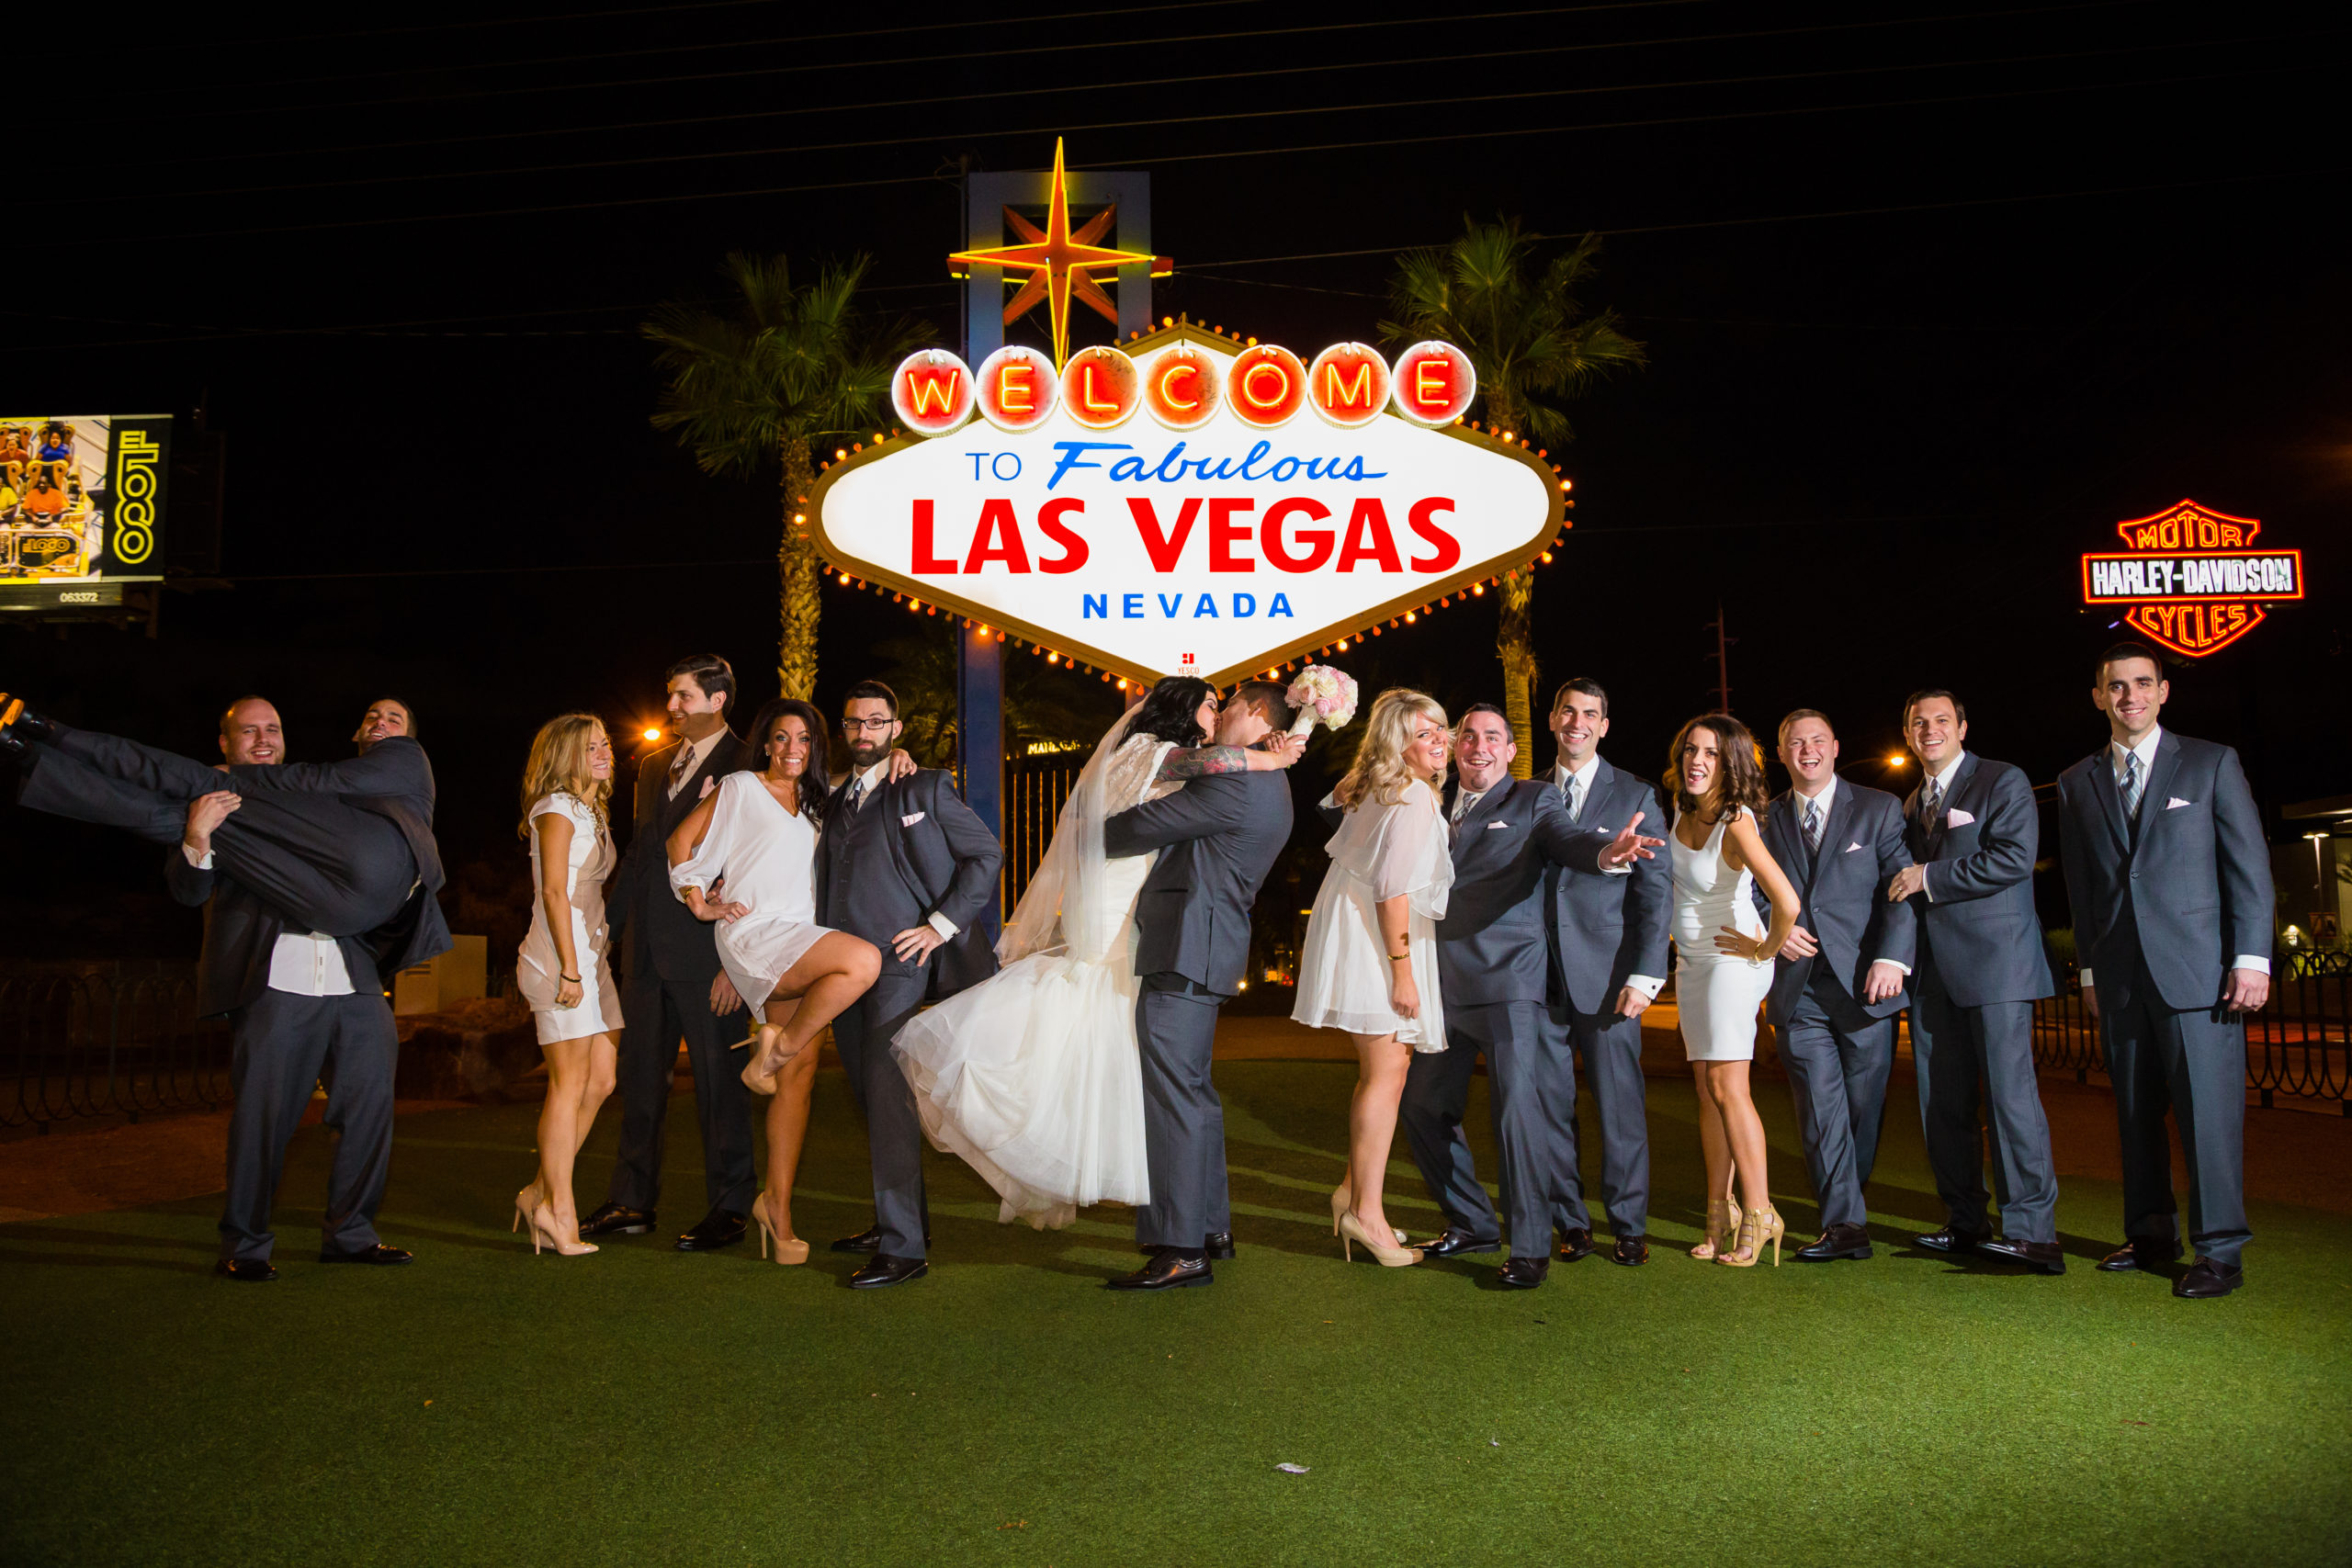 We got married in Las Vegas – is it a legal marriage?